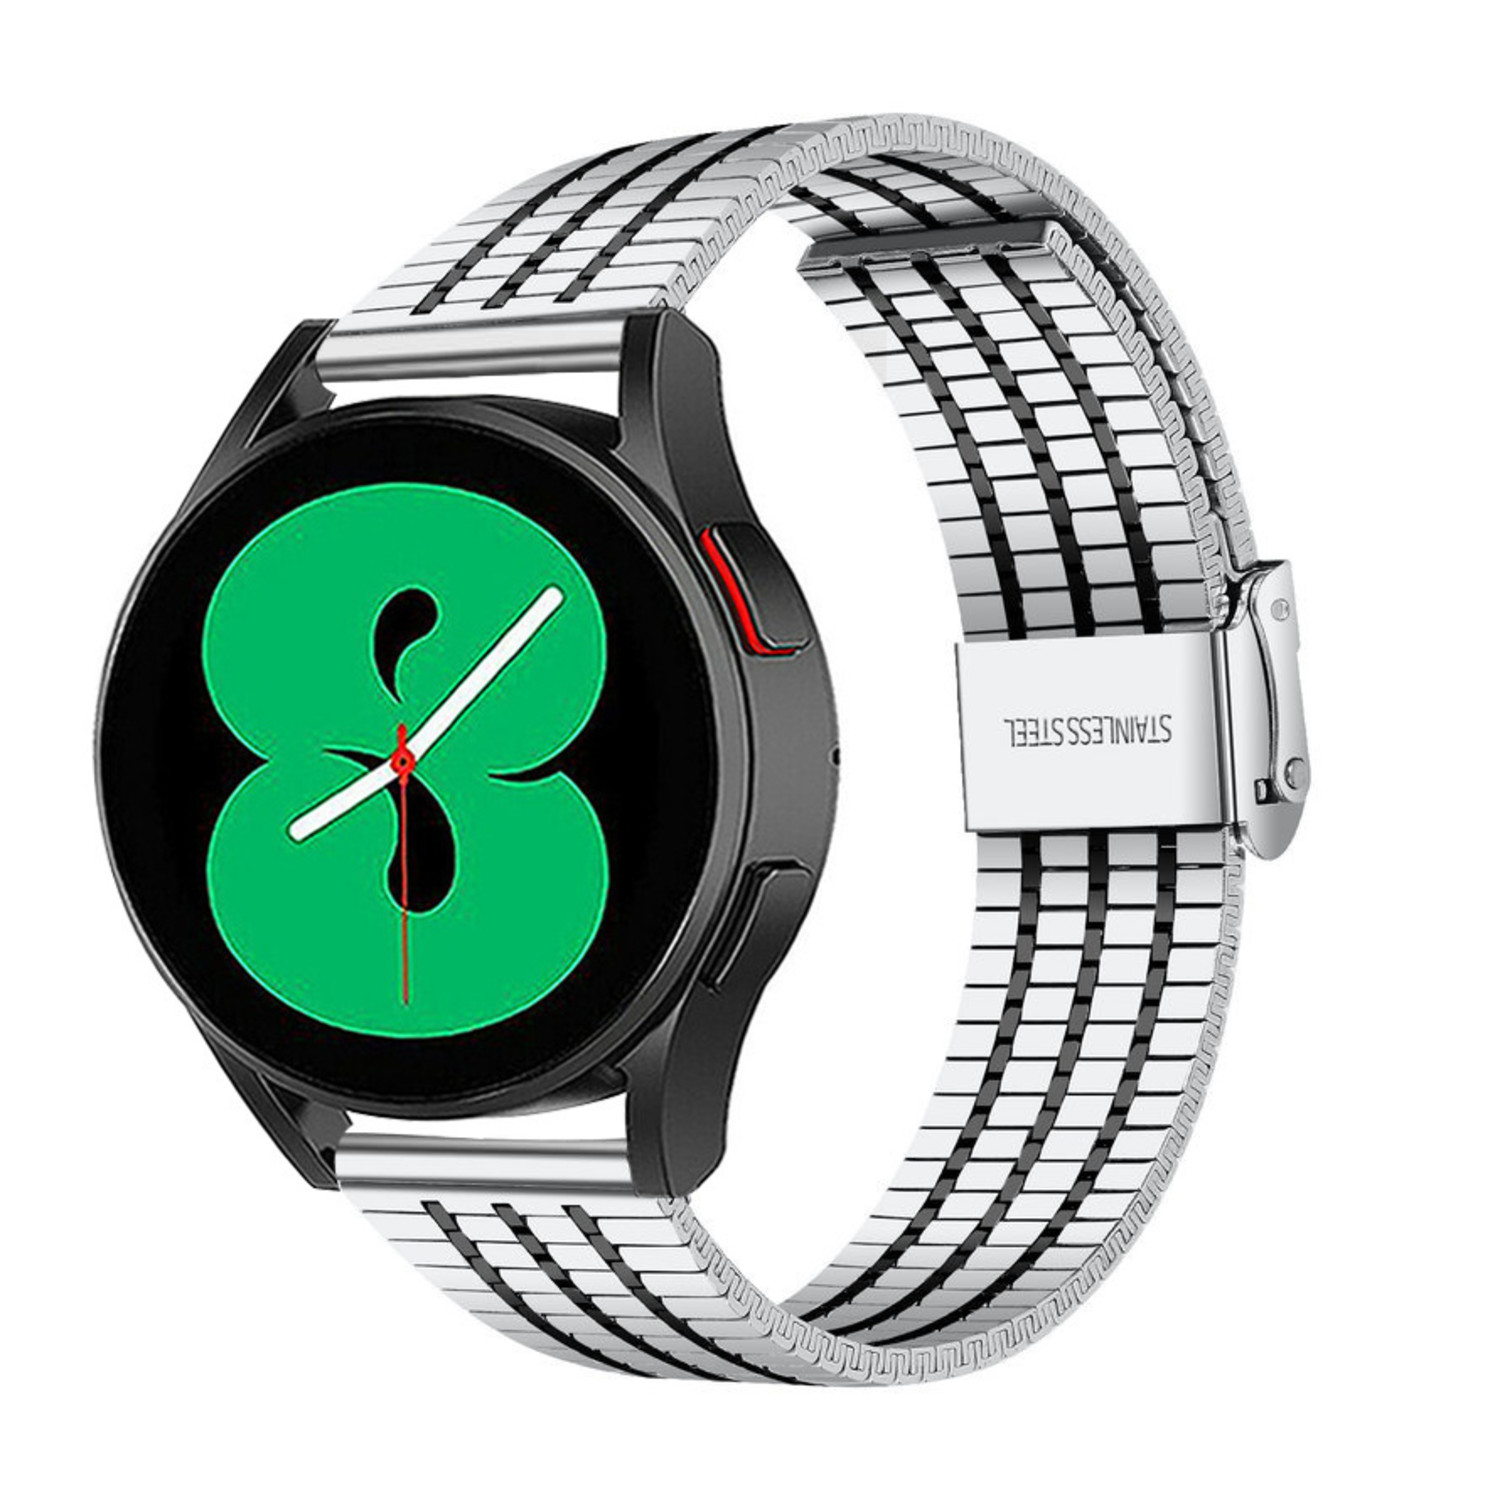 Correa Acero Inoxidable Para Samsung Galaxy Watch 4 /calssic